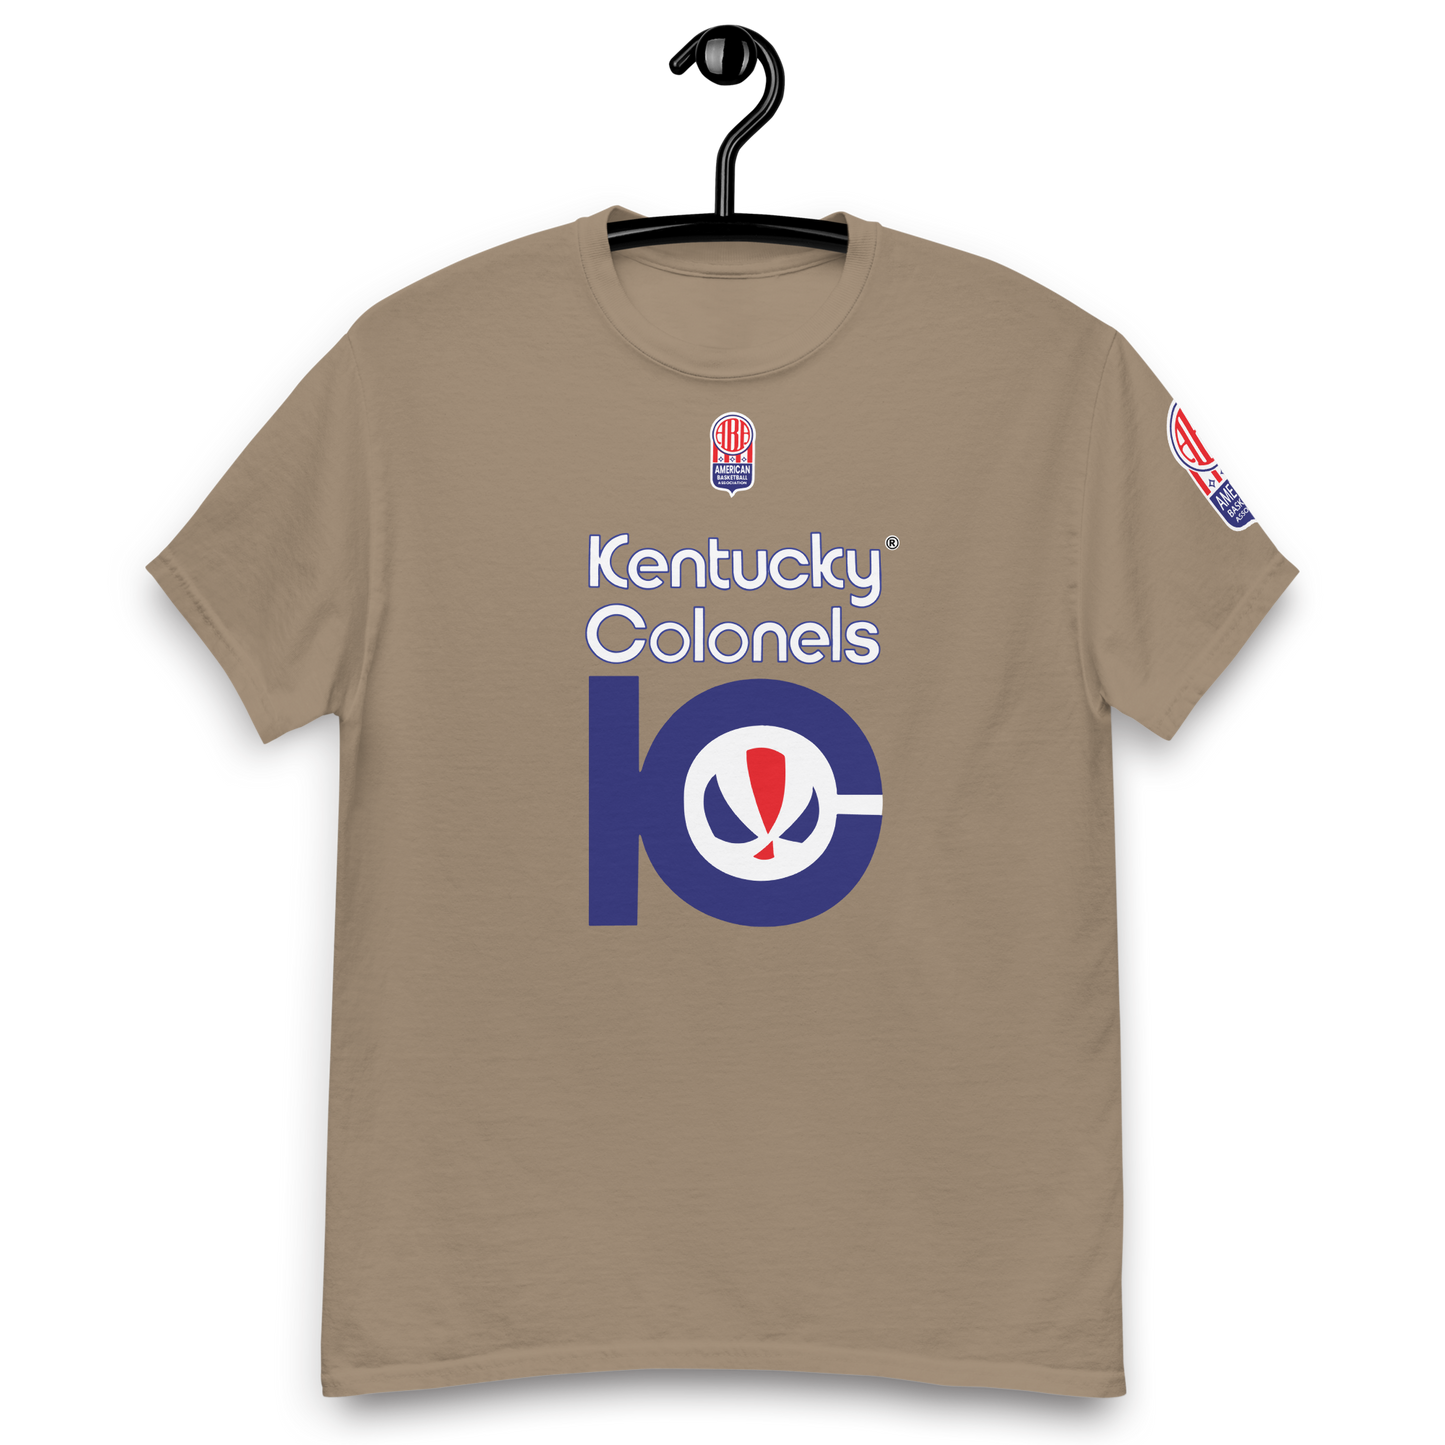 Kentucky Colonels Oldschool ABA T-Shirt! 🏀✨